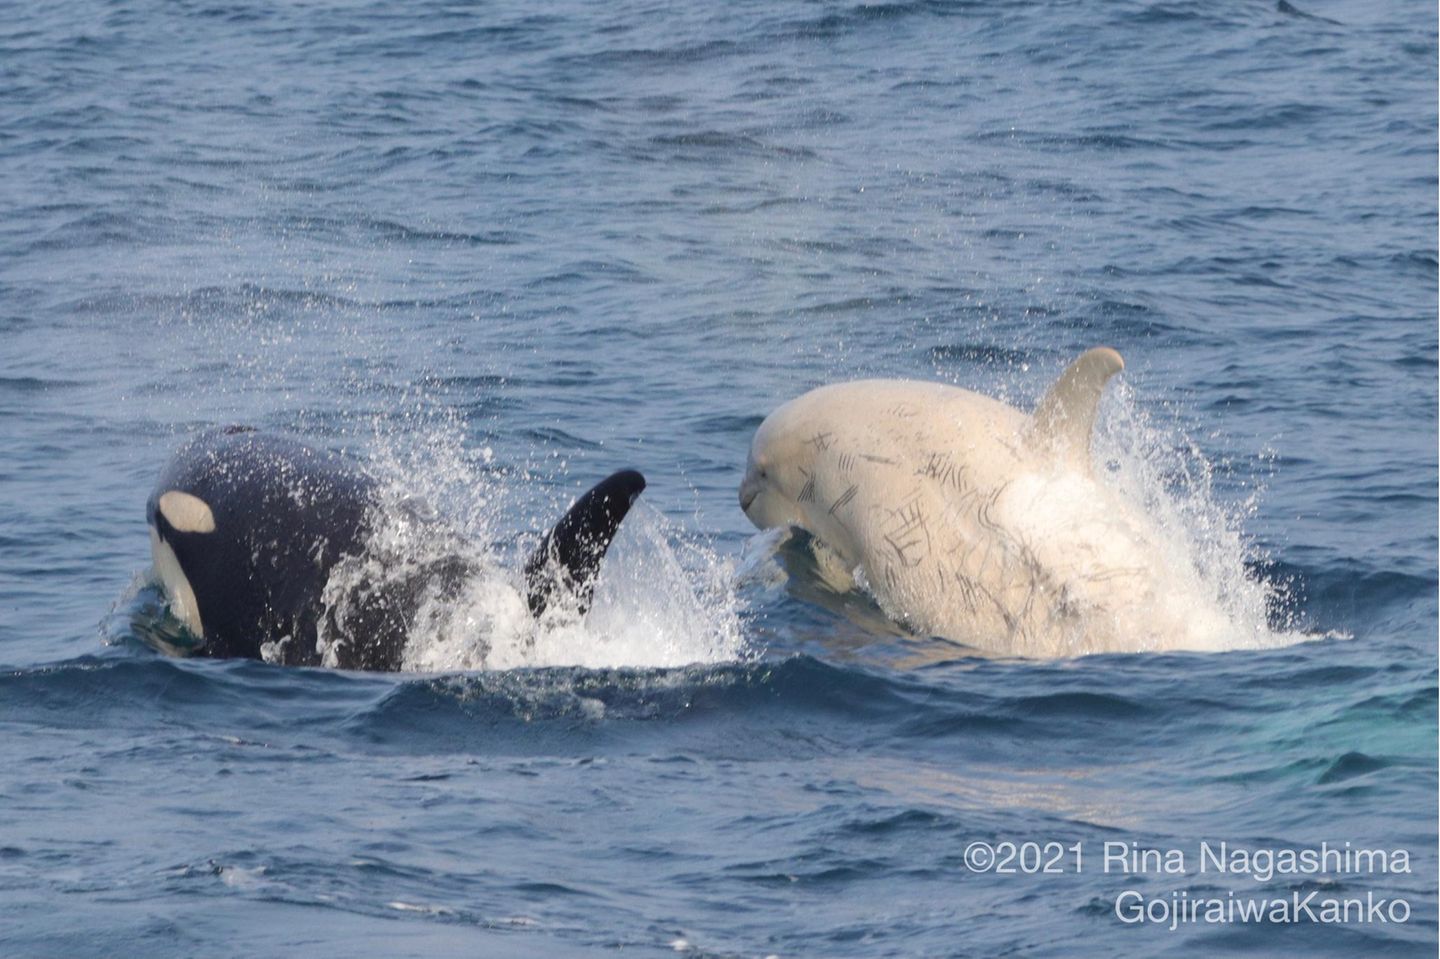 Seltener Anblick: Weiße Orcas leben mit ihren schwarz-weißen Verwandten in Familienverbänden zusammen